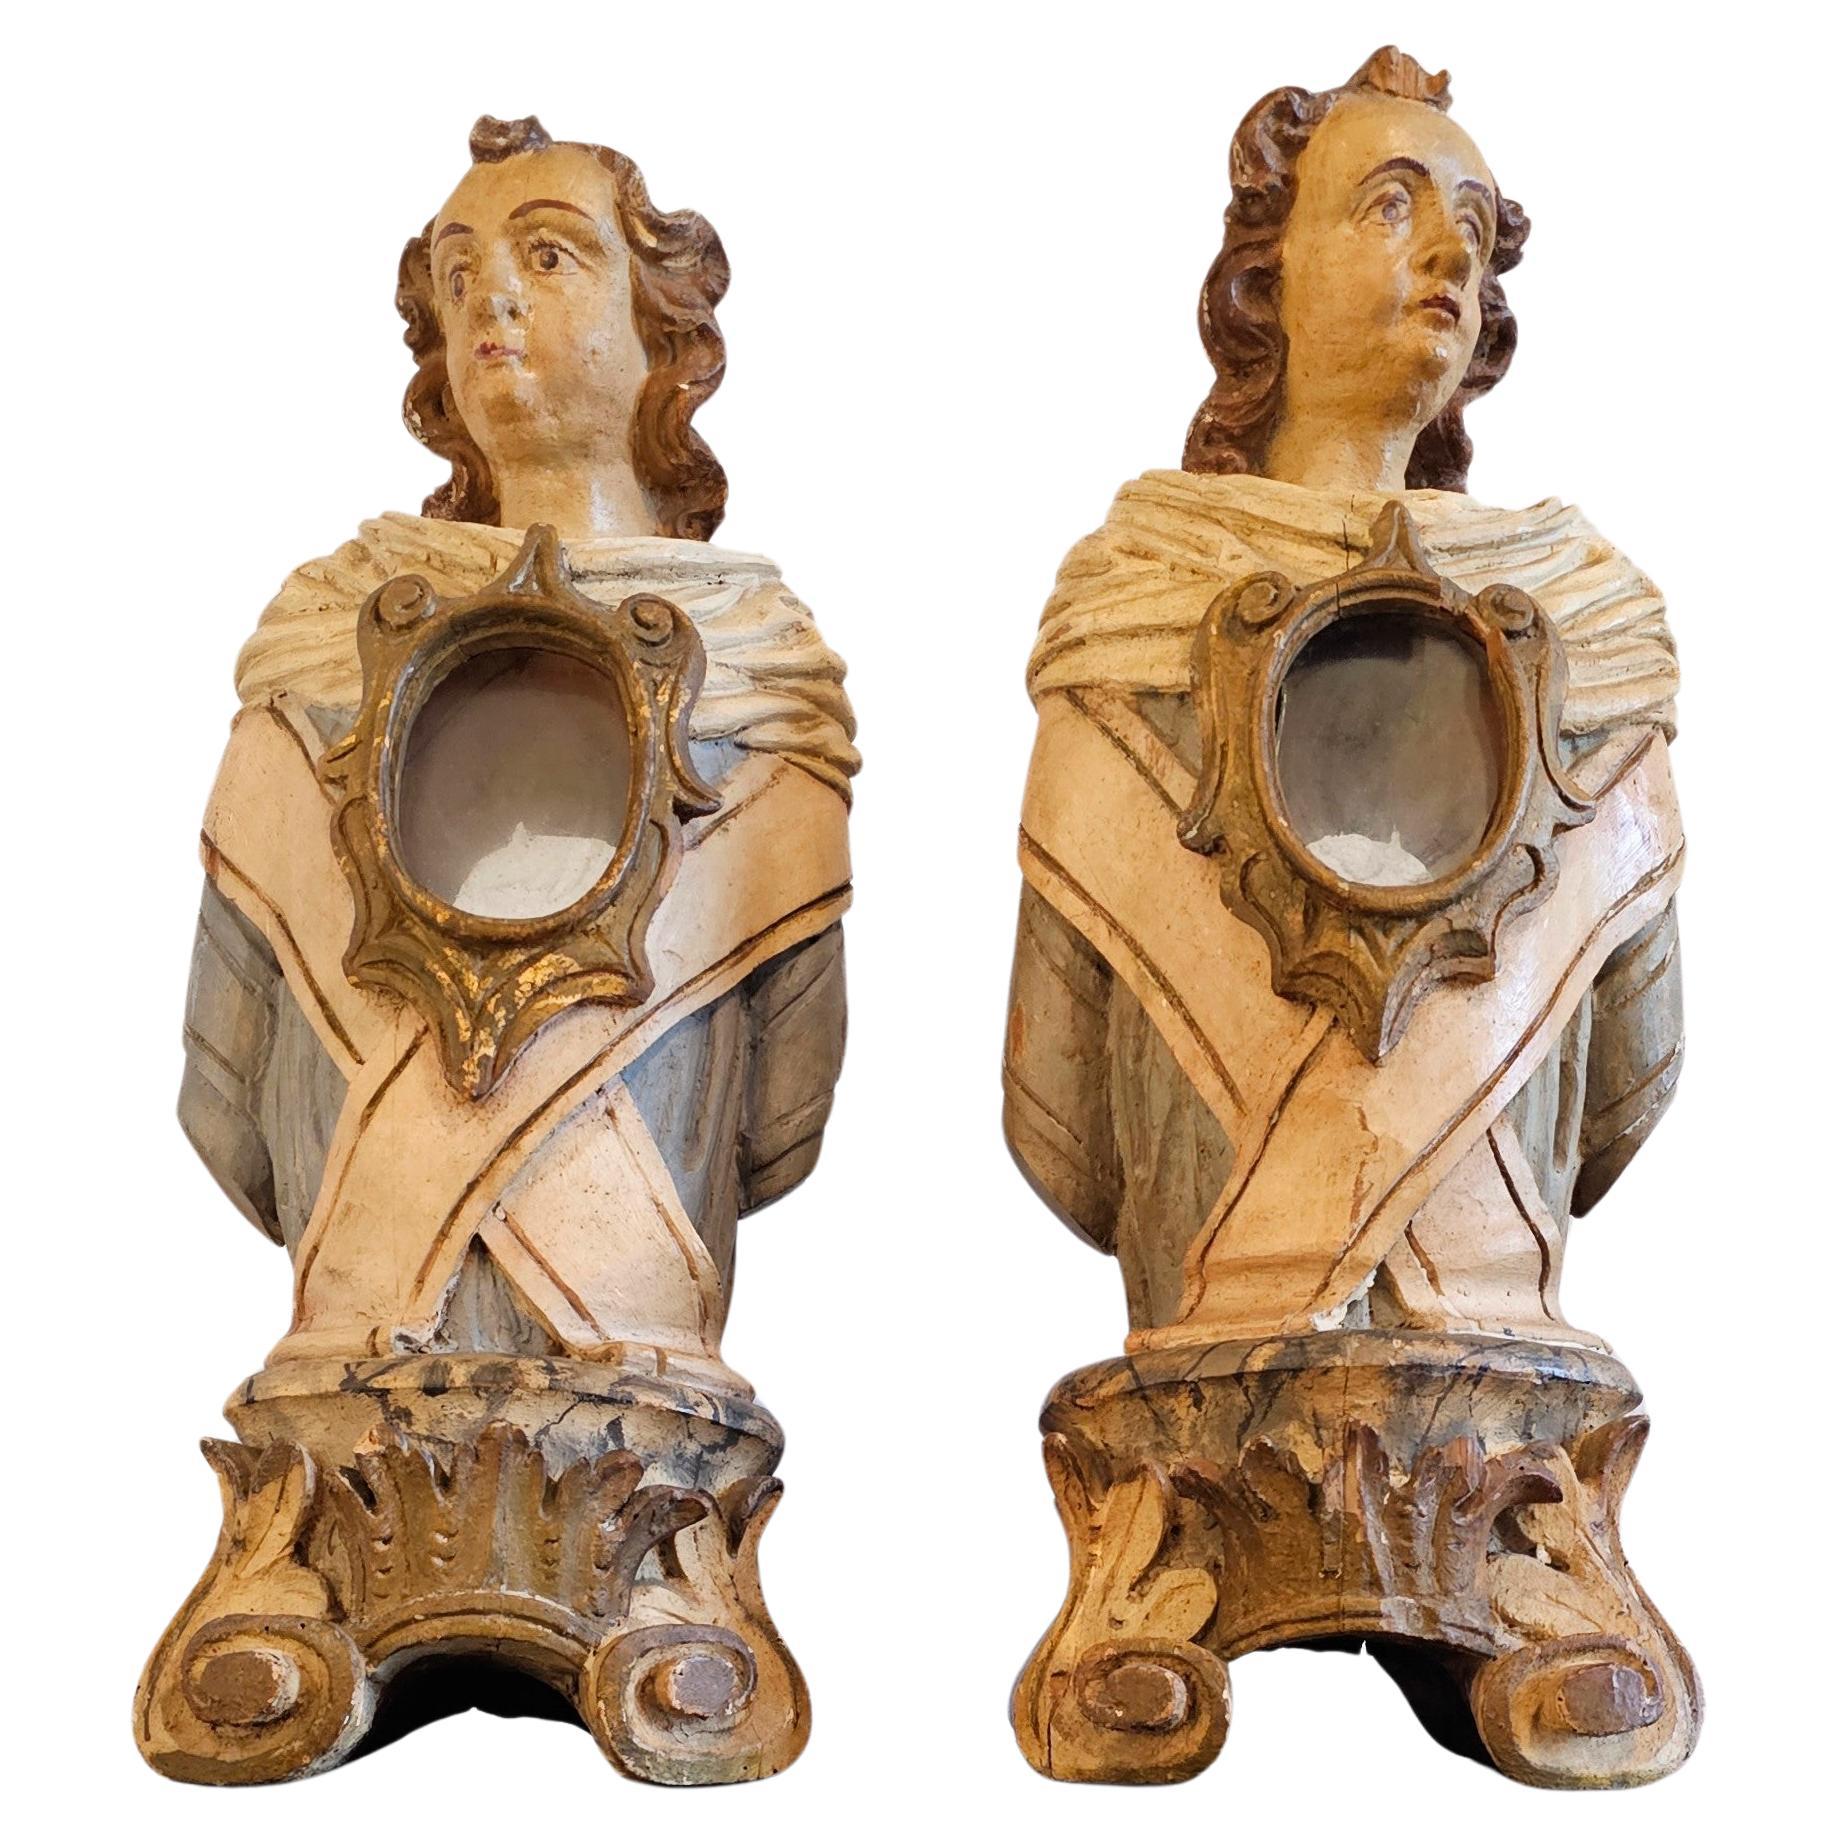 Paire de bustes d'autel reliquaire italien du 18ème siècle en bois peint et sculpté